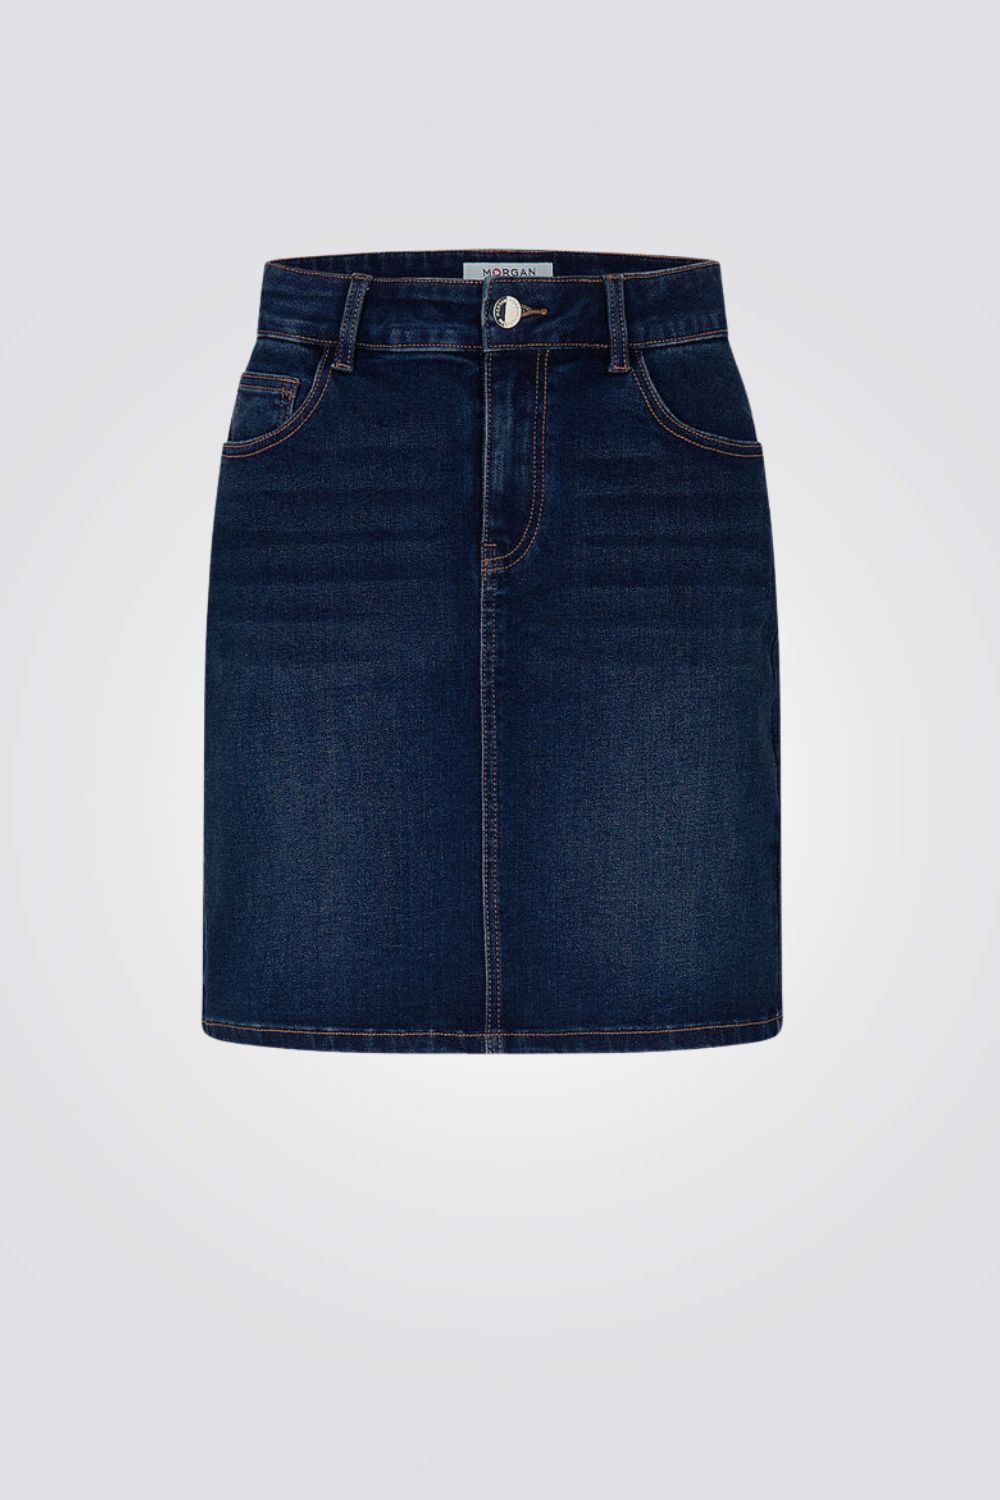 חצאית ג'ינס קצרה בצבע כחול כהה